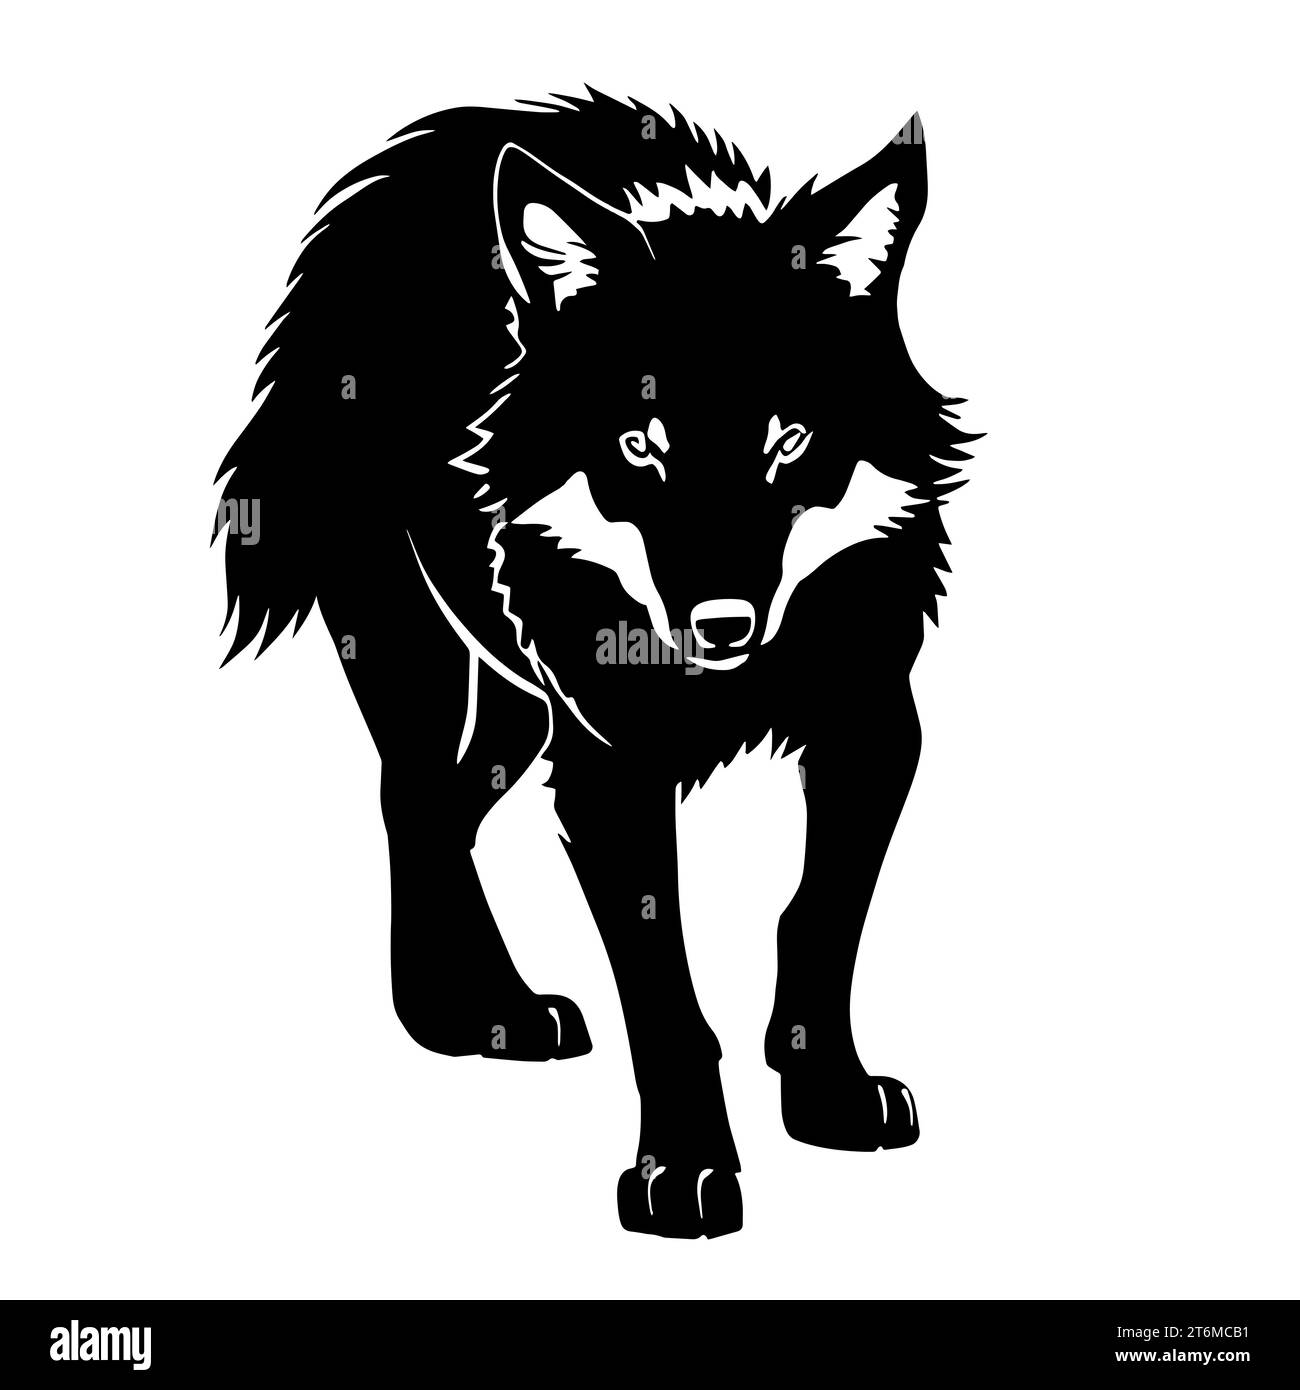 Schwarz-weiß-Illustration eines Wolfes mit dickem Pelzfell und scharfen Zähnen. Der Wolf repräsentiert das Rudel, starke Familienbande und Kooperation Stockfoto